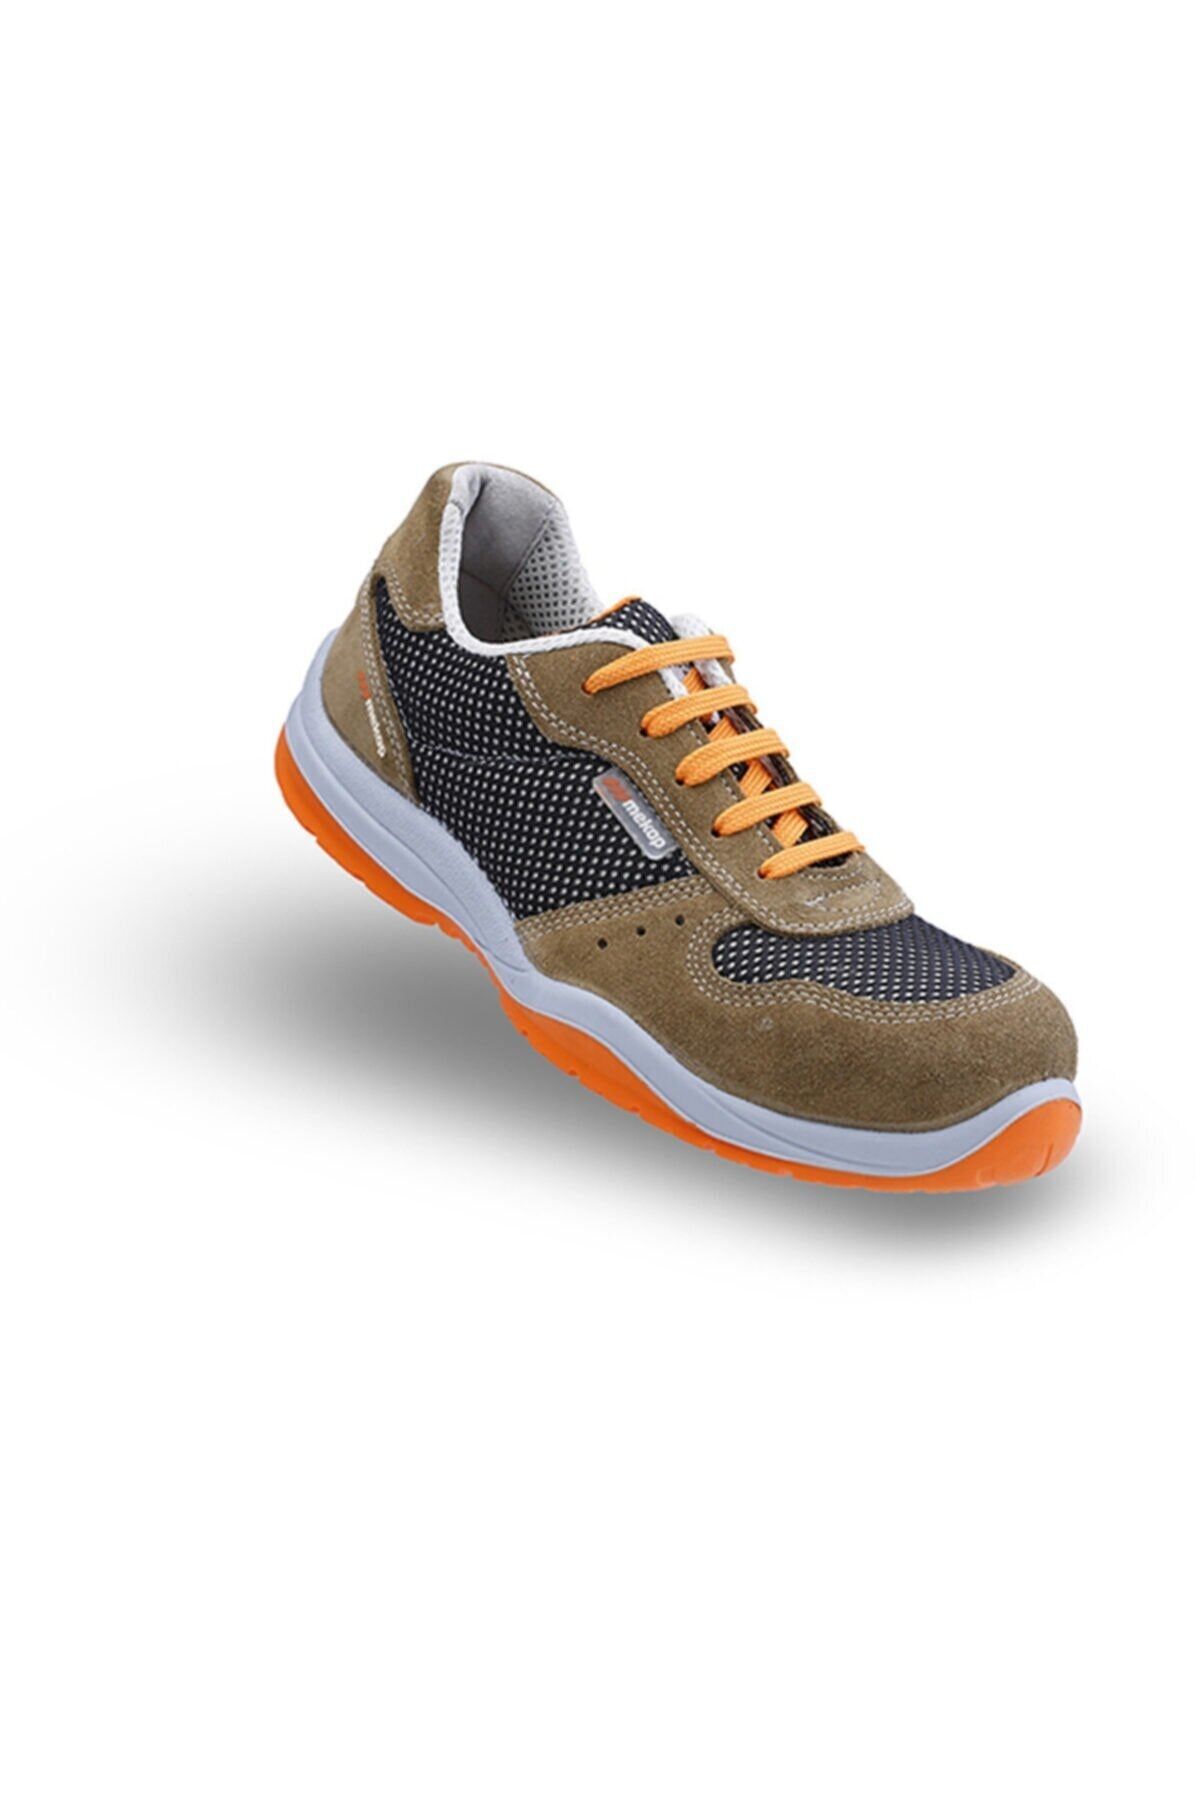 Mekap Rmk-13 %100 Deri Çelik Burunlu Spor Iş Ayakkabısı